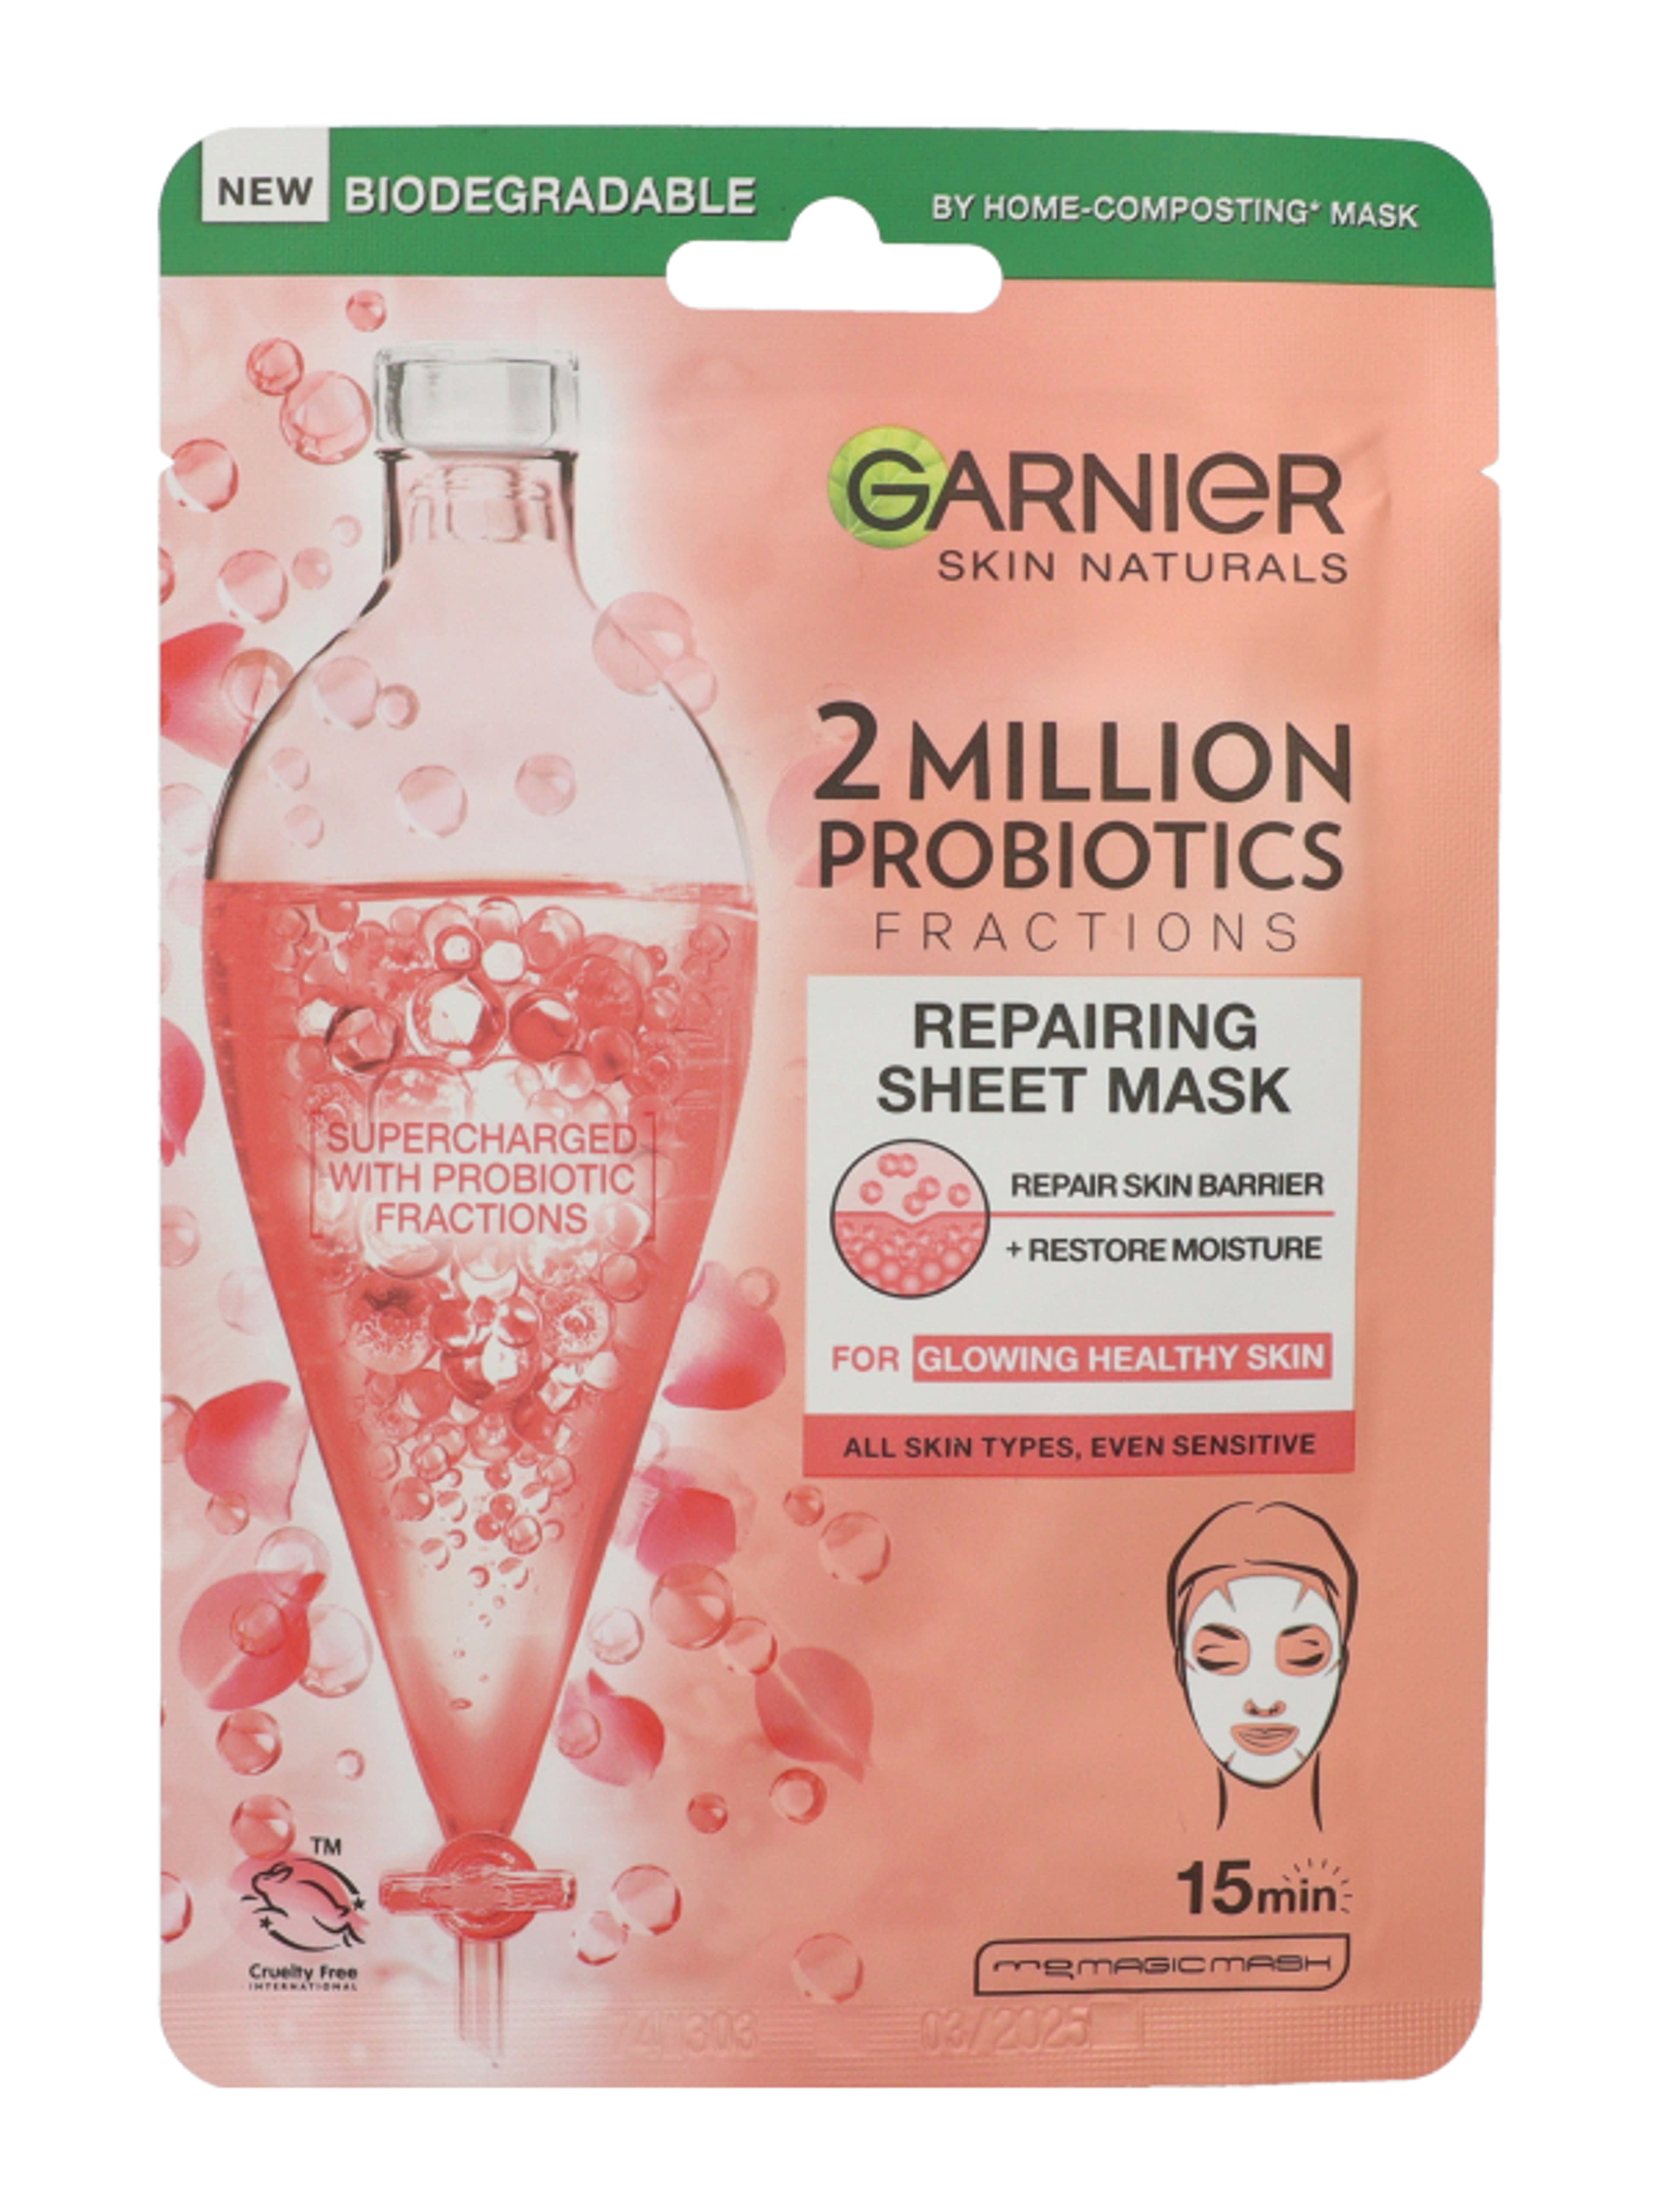 Garnier Skin Naturals texilmaszk probiotikummal  - 1 db